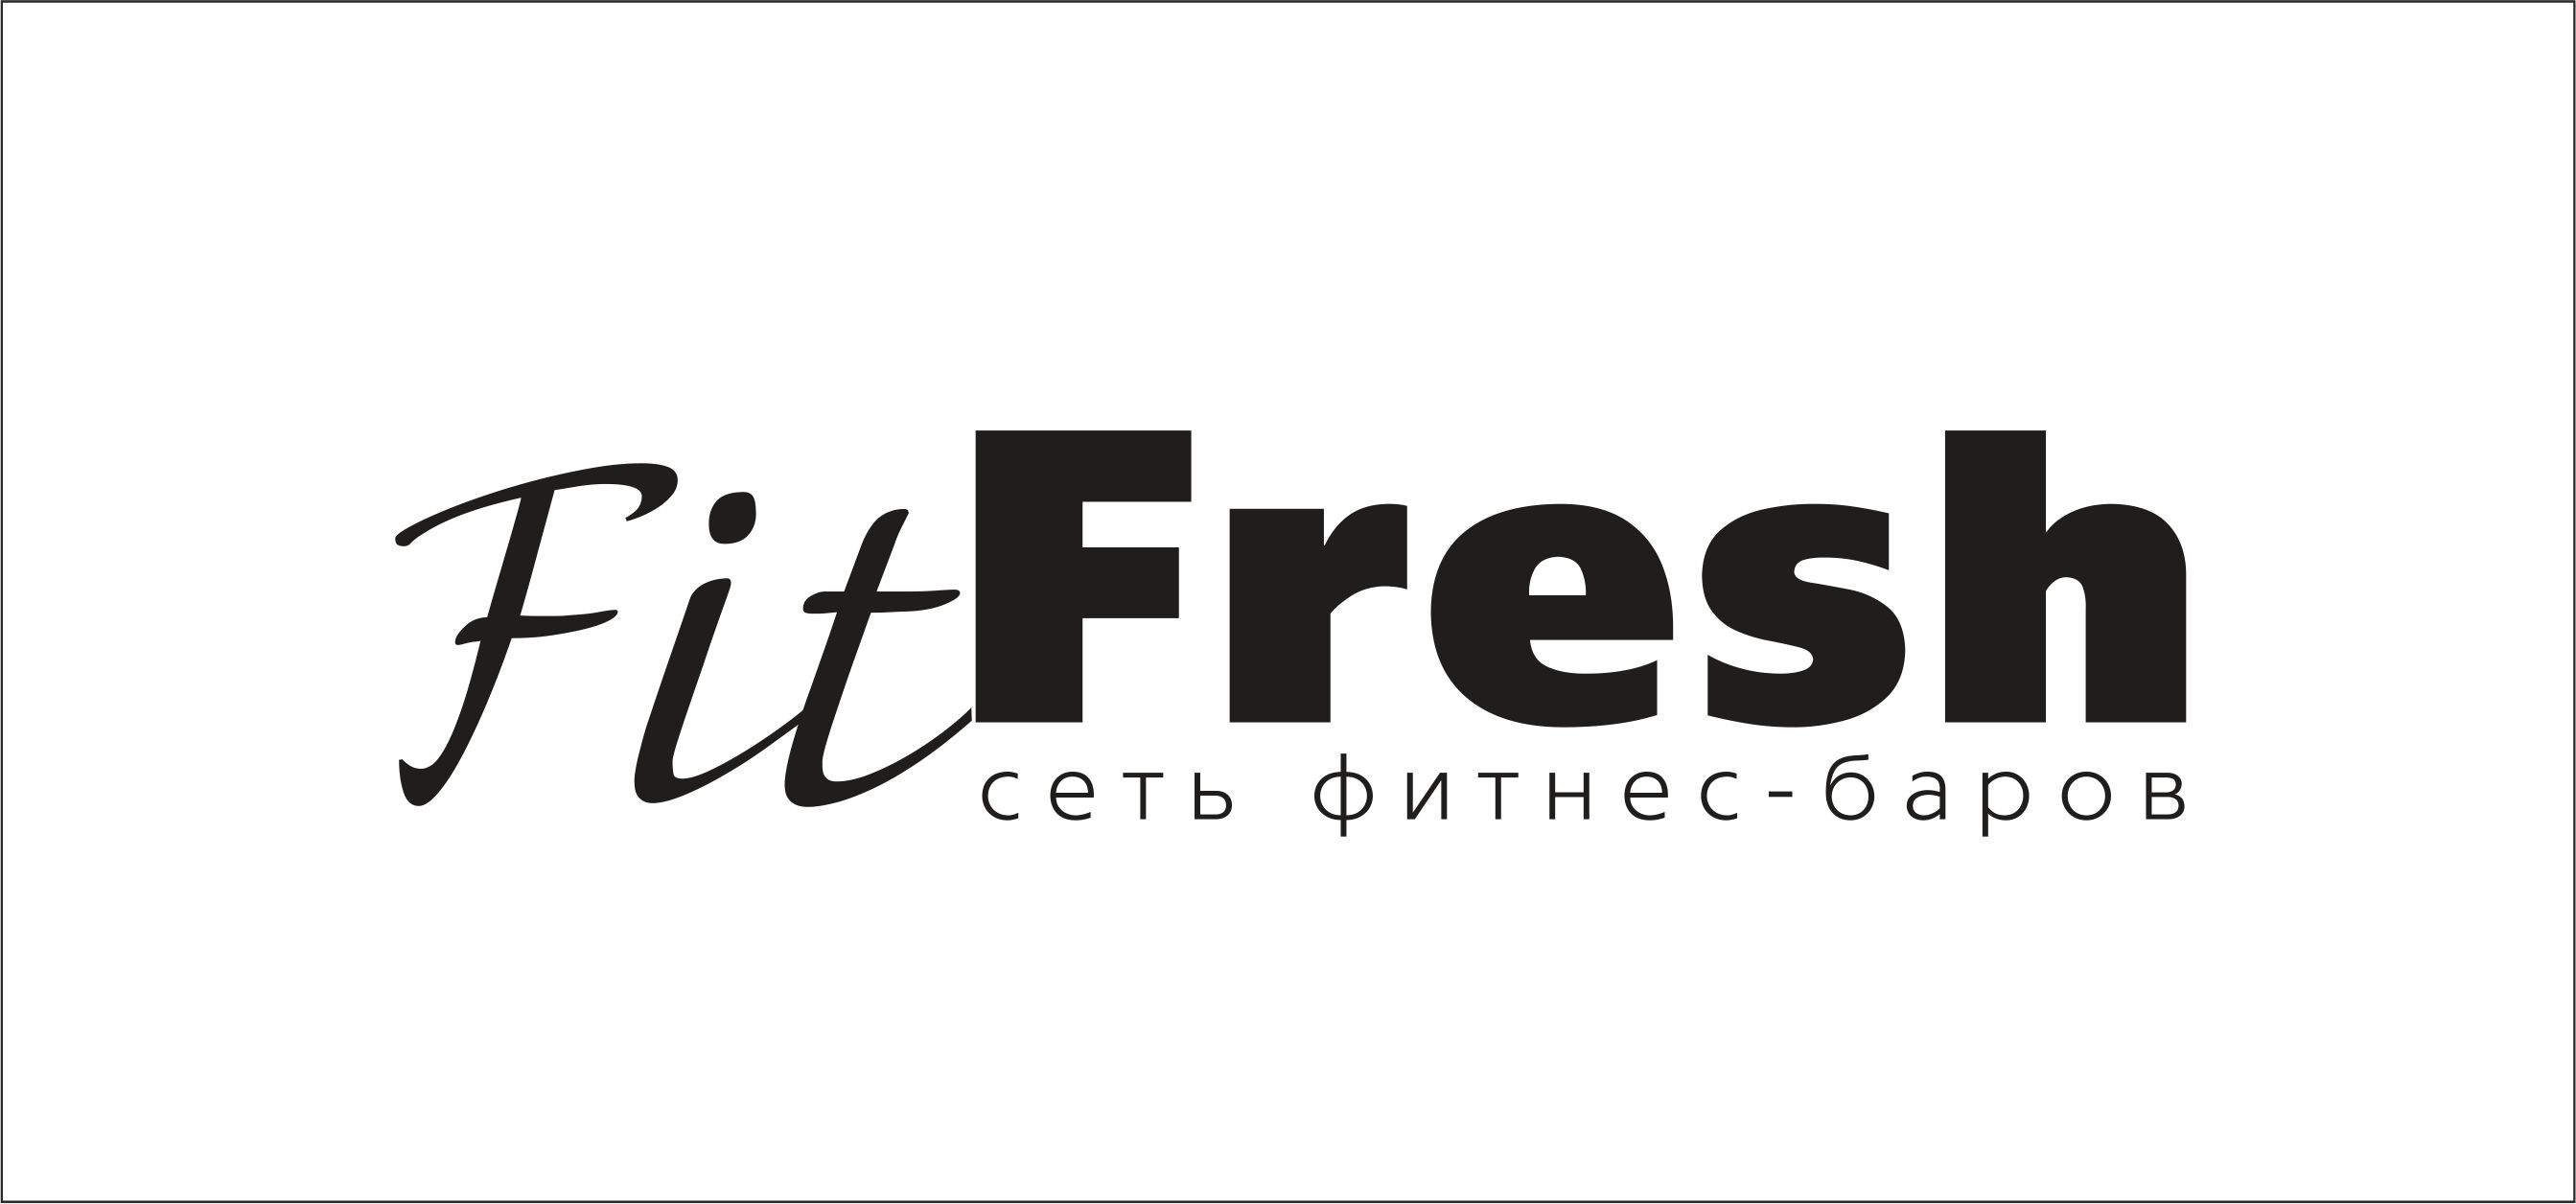 Сеть фитнес баров "Fitfresh"